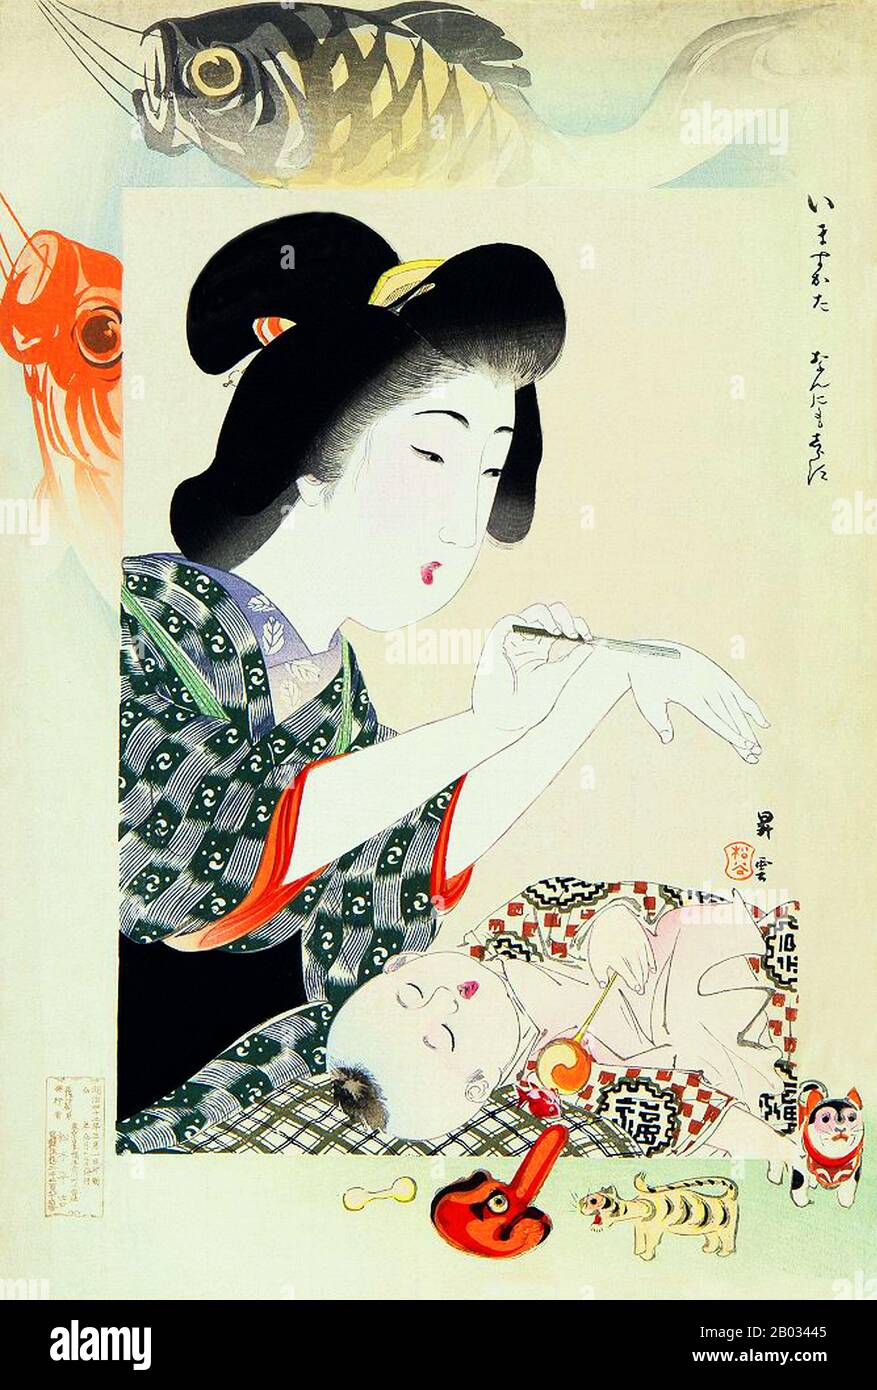 Yamamoto Shoun (30 dicembre 1870 – 10 maggio 1965), conosciuto anche come Matsutani Shoun, è stato un disegnatore, pittore e illustratore giapponese. Nacque a Kochi in una famiglia di fermi dello Shogun e gli fu dato il nome di Mosaburo. Come adolescente, studiò la pittura scolastica di Kano con Yanagimoto Doso e Kawada Shoryu. A circa 17 anni si trasferì a Tokyo, dove studiò pittura Nanga con Taki Katei. A 20 anni, è stato impiegato come illustratore per Fugoku Gaho, una rivista pittorica che si occupa dei luoghi di interesse di Tokyo e dintorni. Nella sua ultima carriera, Shoun produceva principalmente pa Foto Stock